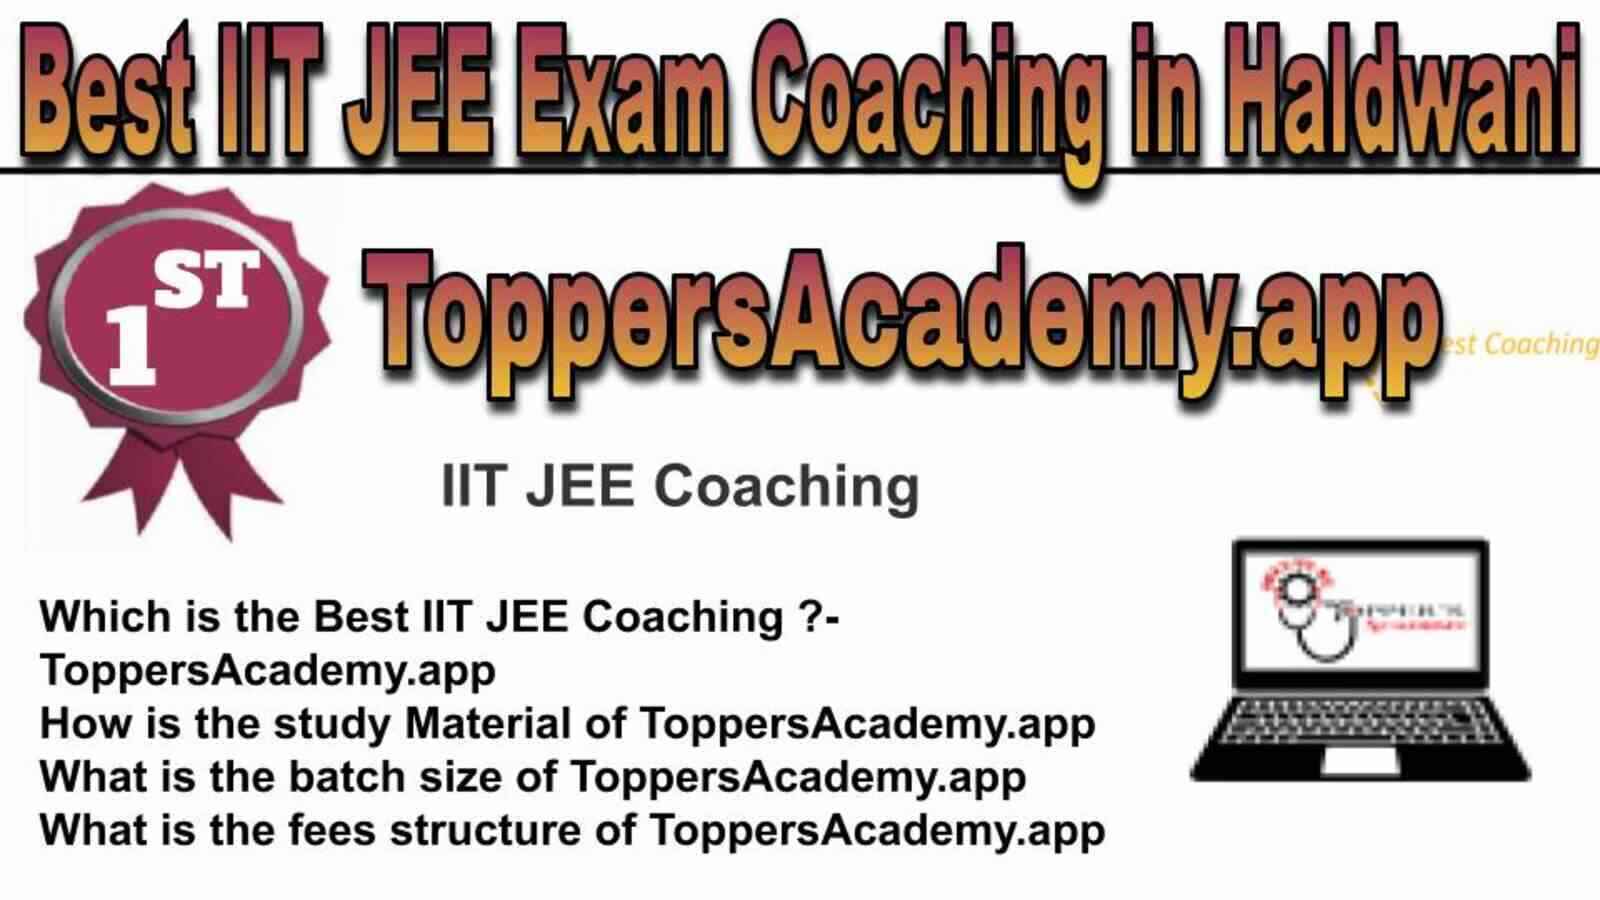 Rank 1 Best IIT JEE Coaching in Haldwani